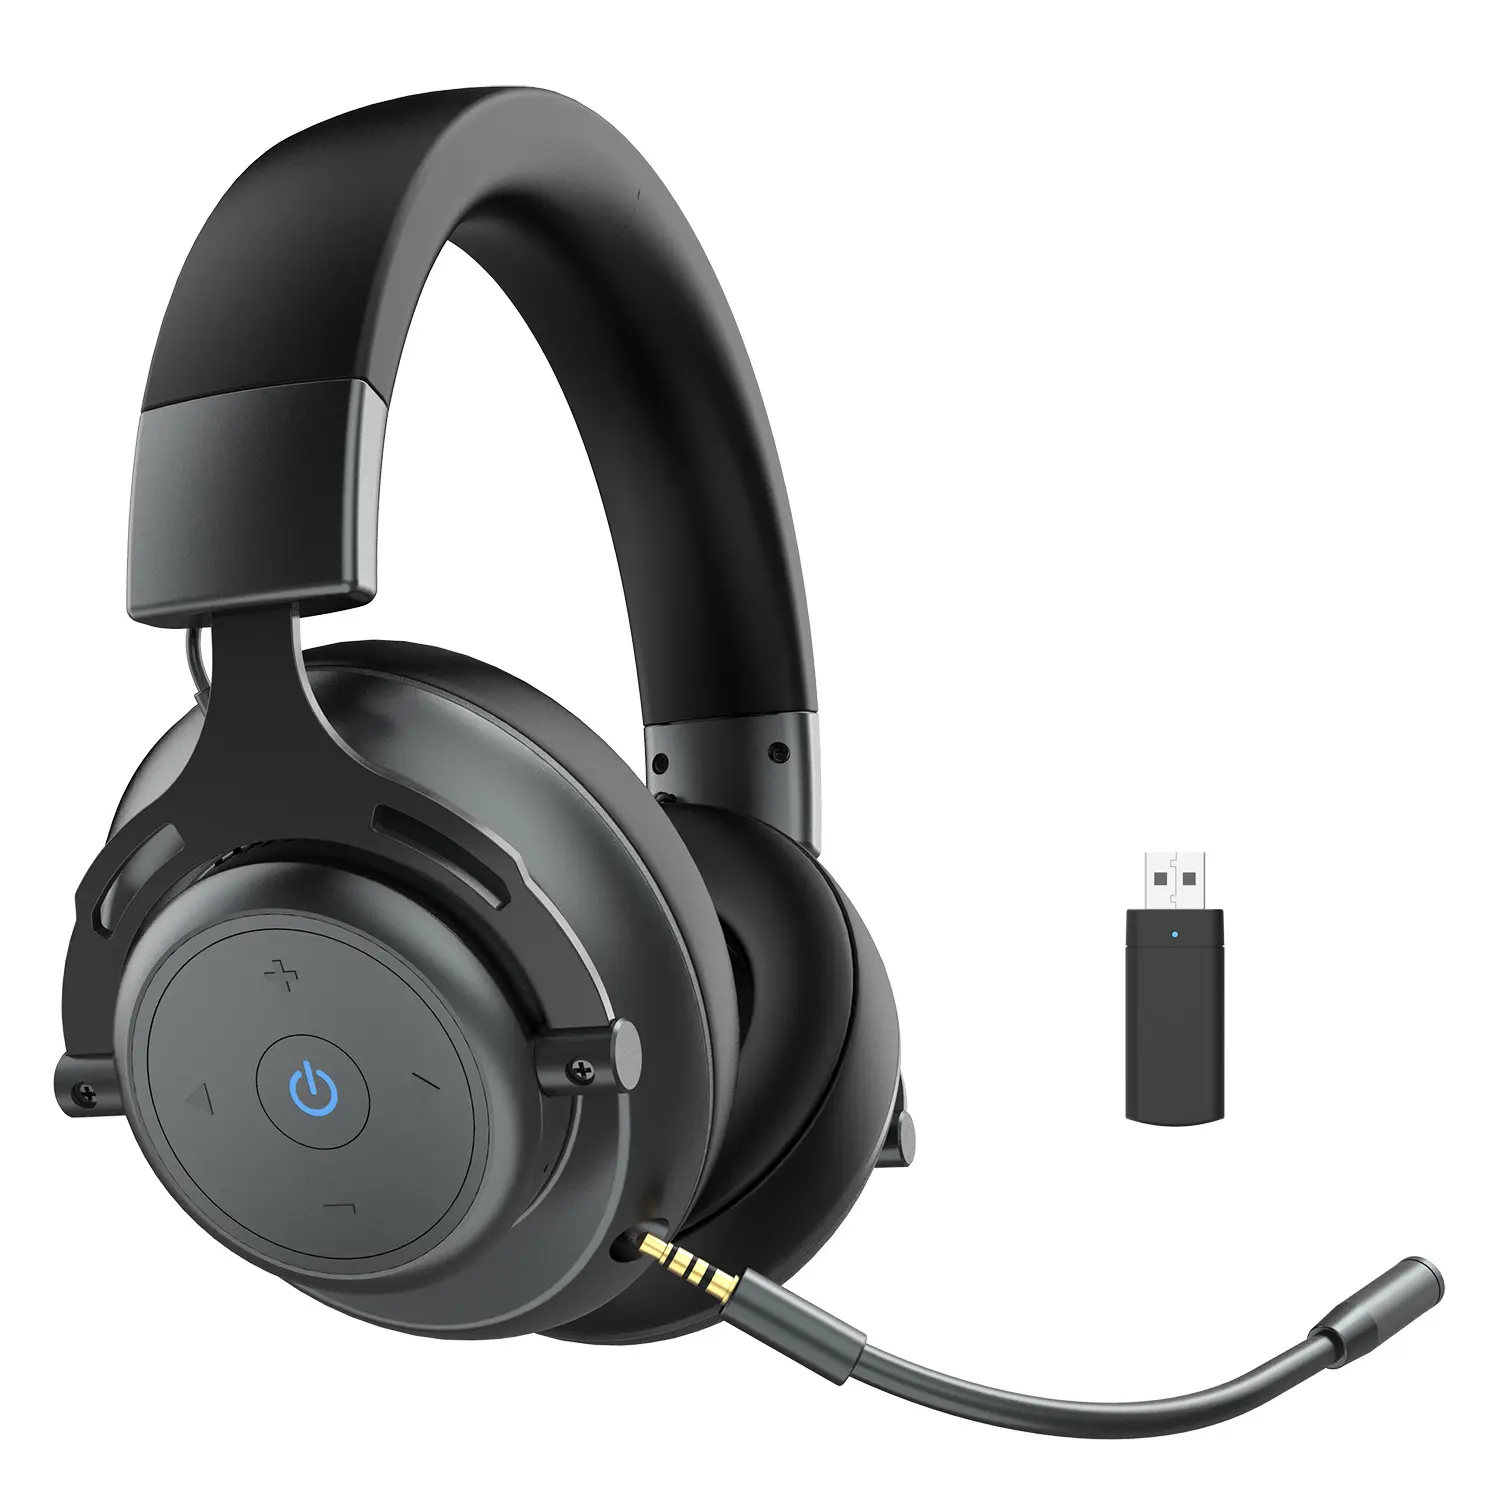 Samtronic BT60-x sonido Surround 7,1 2,4G inalámbrico de auriculares para PS5... PS4 PC de juego inalámbrico auriculares de oído